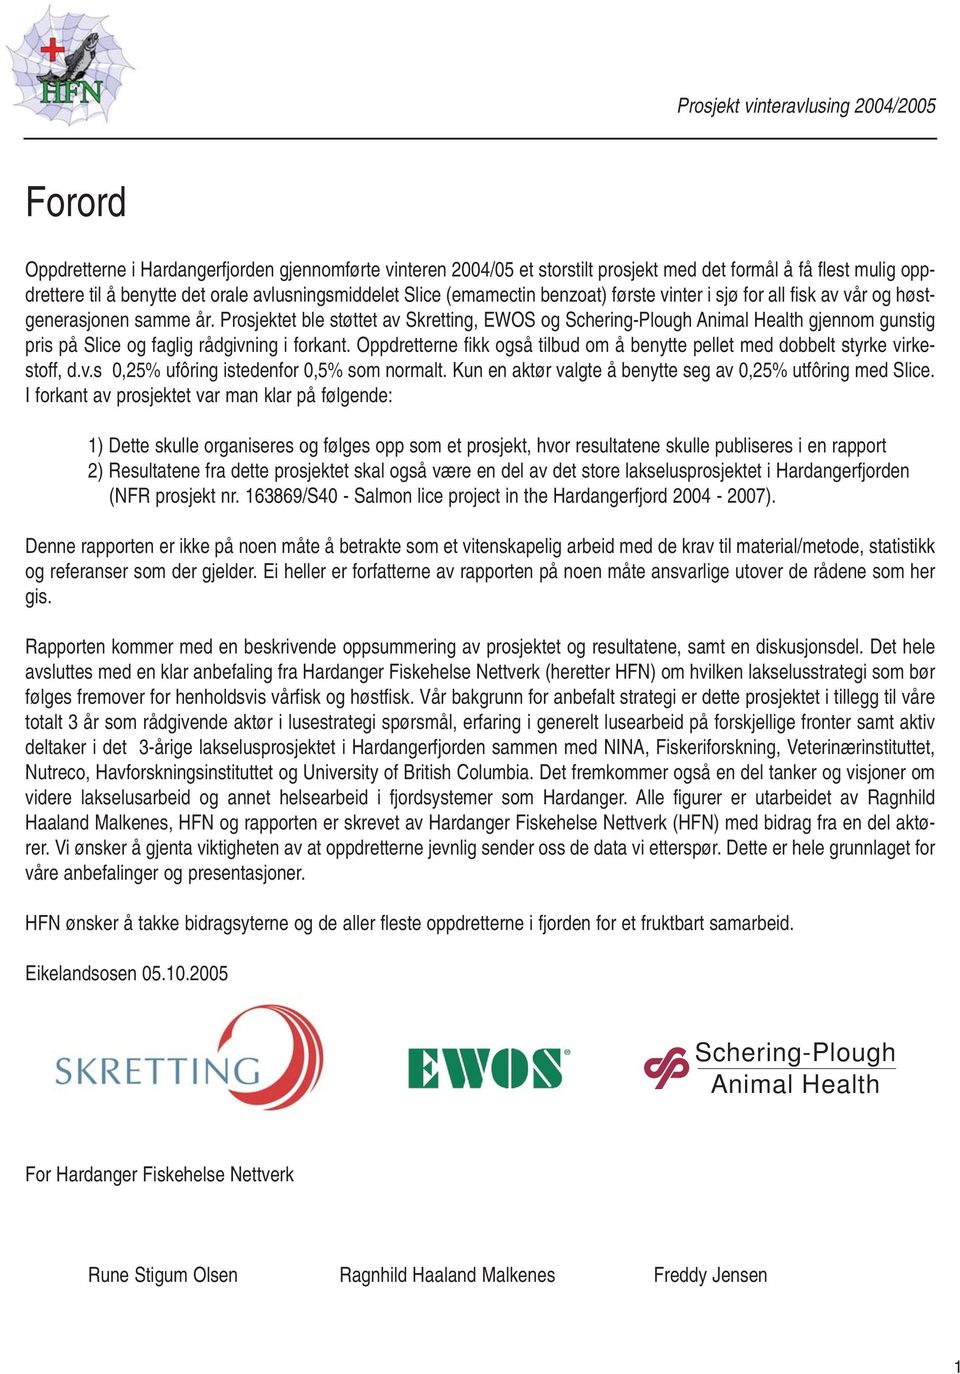 Prosjektet ble støttet av Skretting, EWOS og Schering-Plough Animal Health gjennom gunstig pris på Slice og faglig rådgivning i forkant.